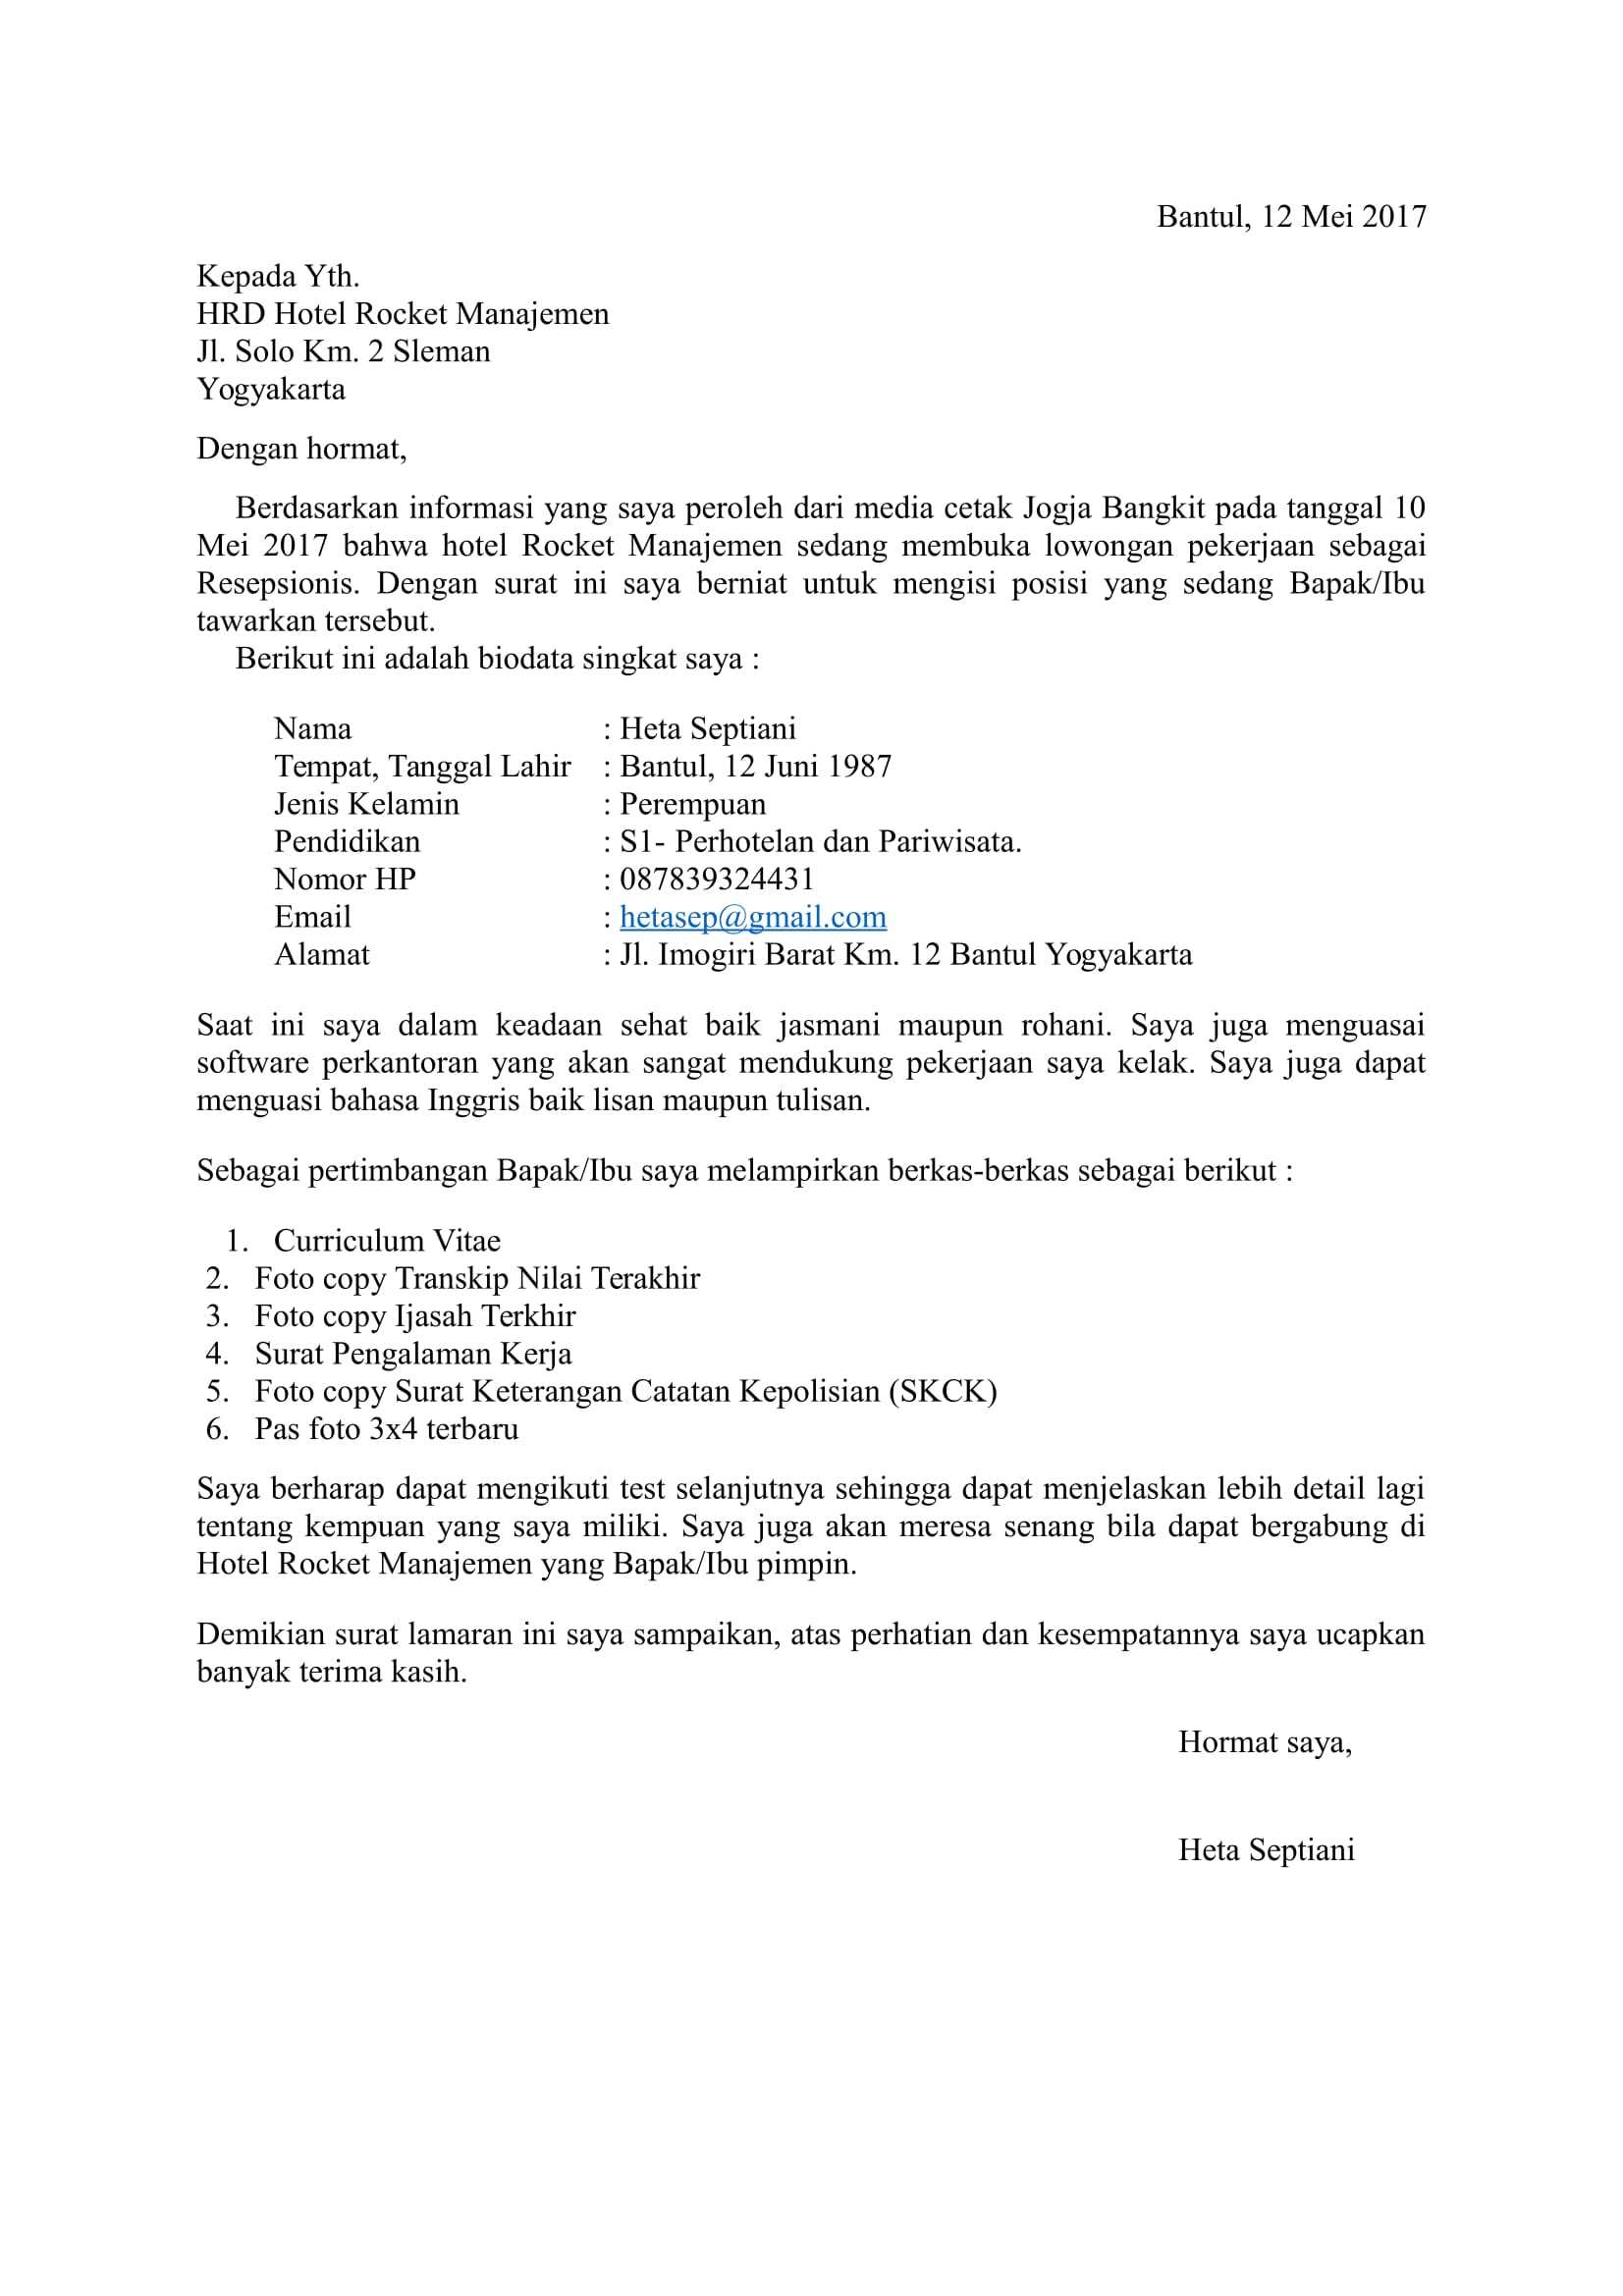 Top Contoh Surat Lamaran Kerja Bahasa Indonesia Xii 79 Guna Ide Membuat Surat Lamaran pada post Contoh Surat Lamaran Kerja Bahasa Indonesia Xii